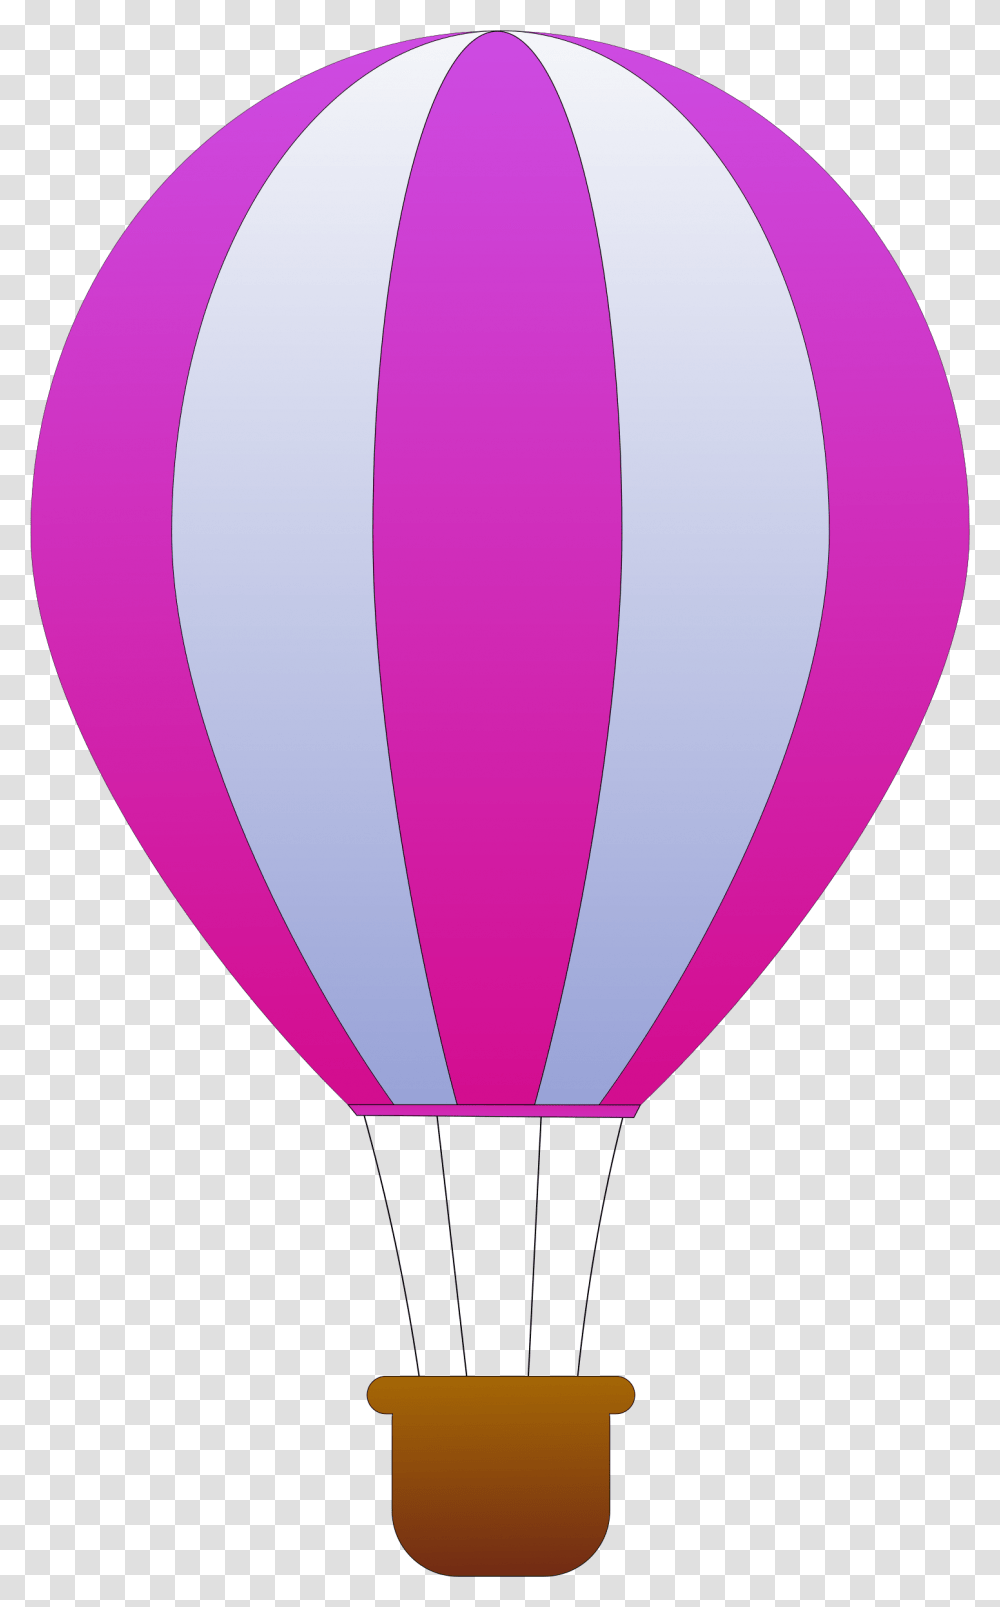 Air Balloon Image, Hot Air Balloon, Aircraft, Vehicle, Transportation Transparent Png